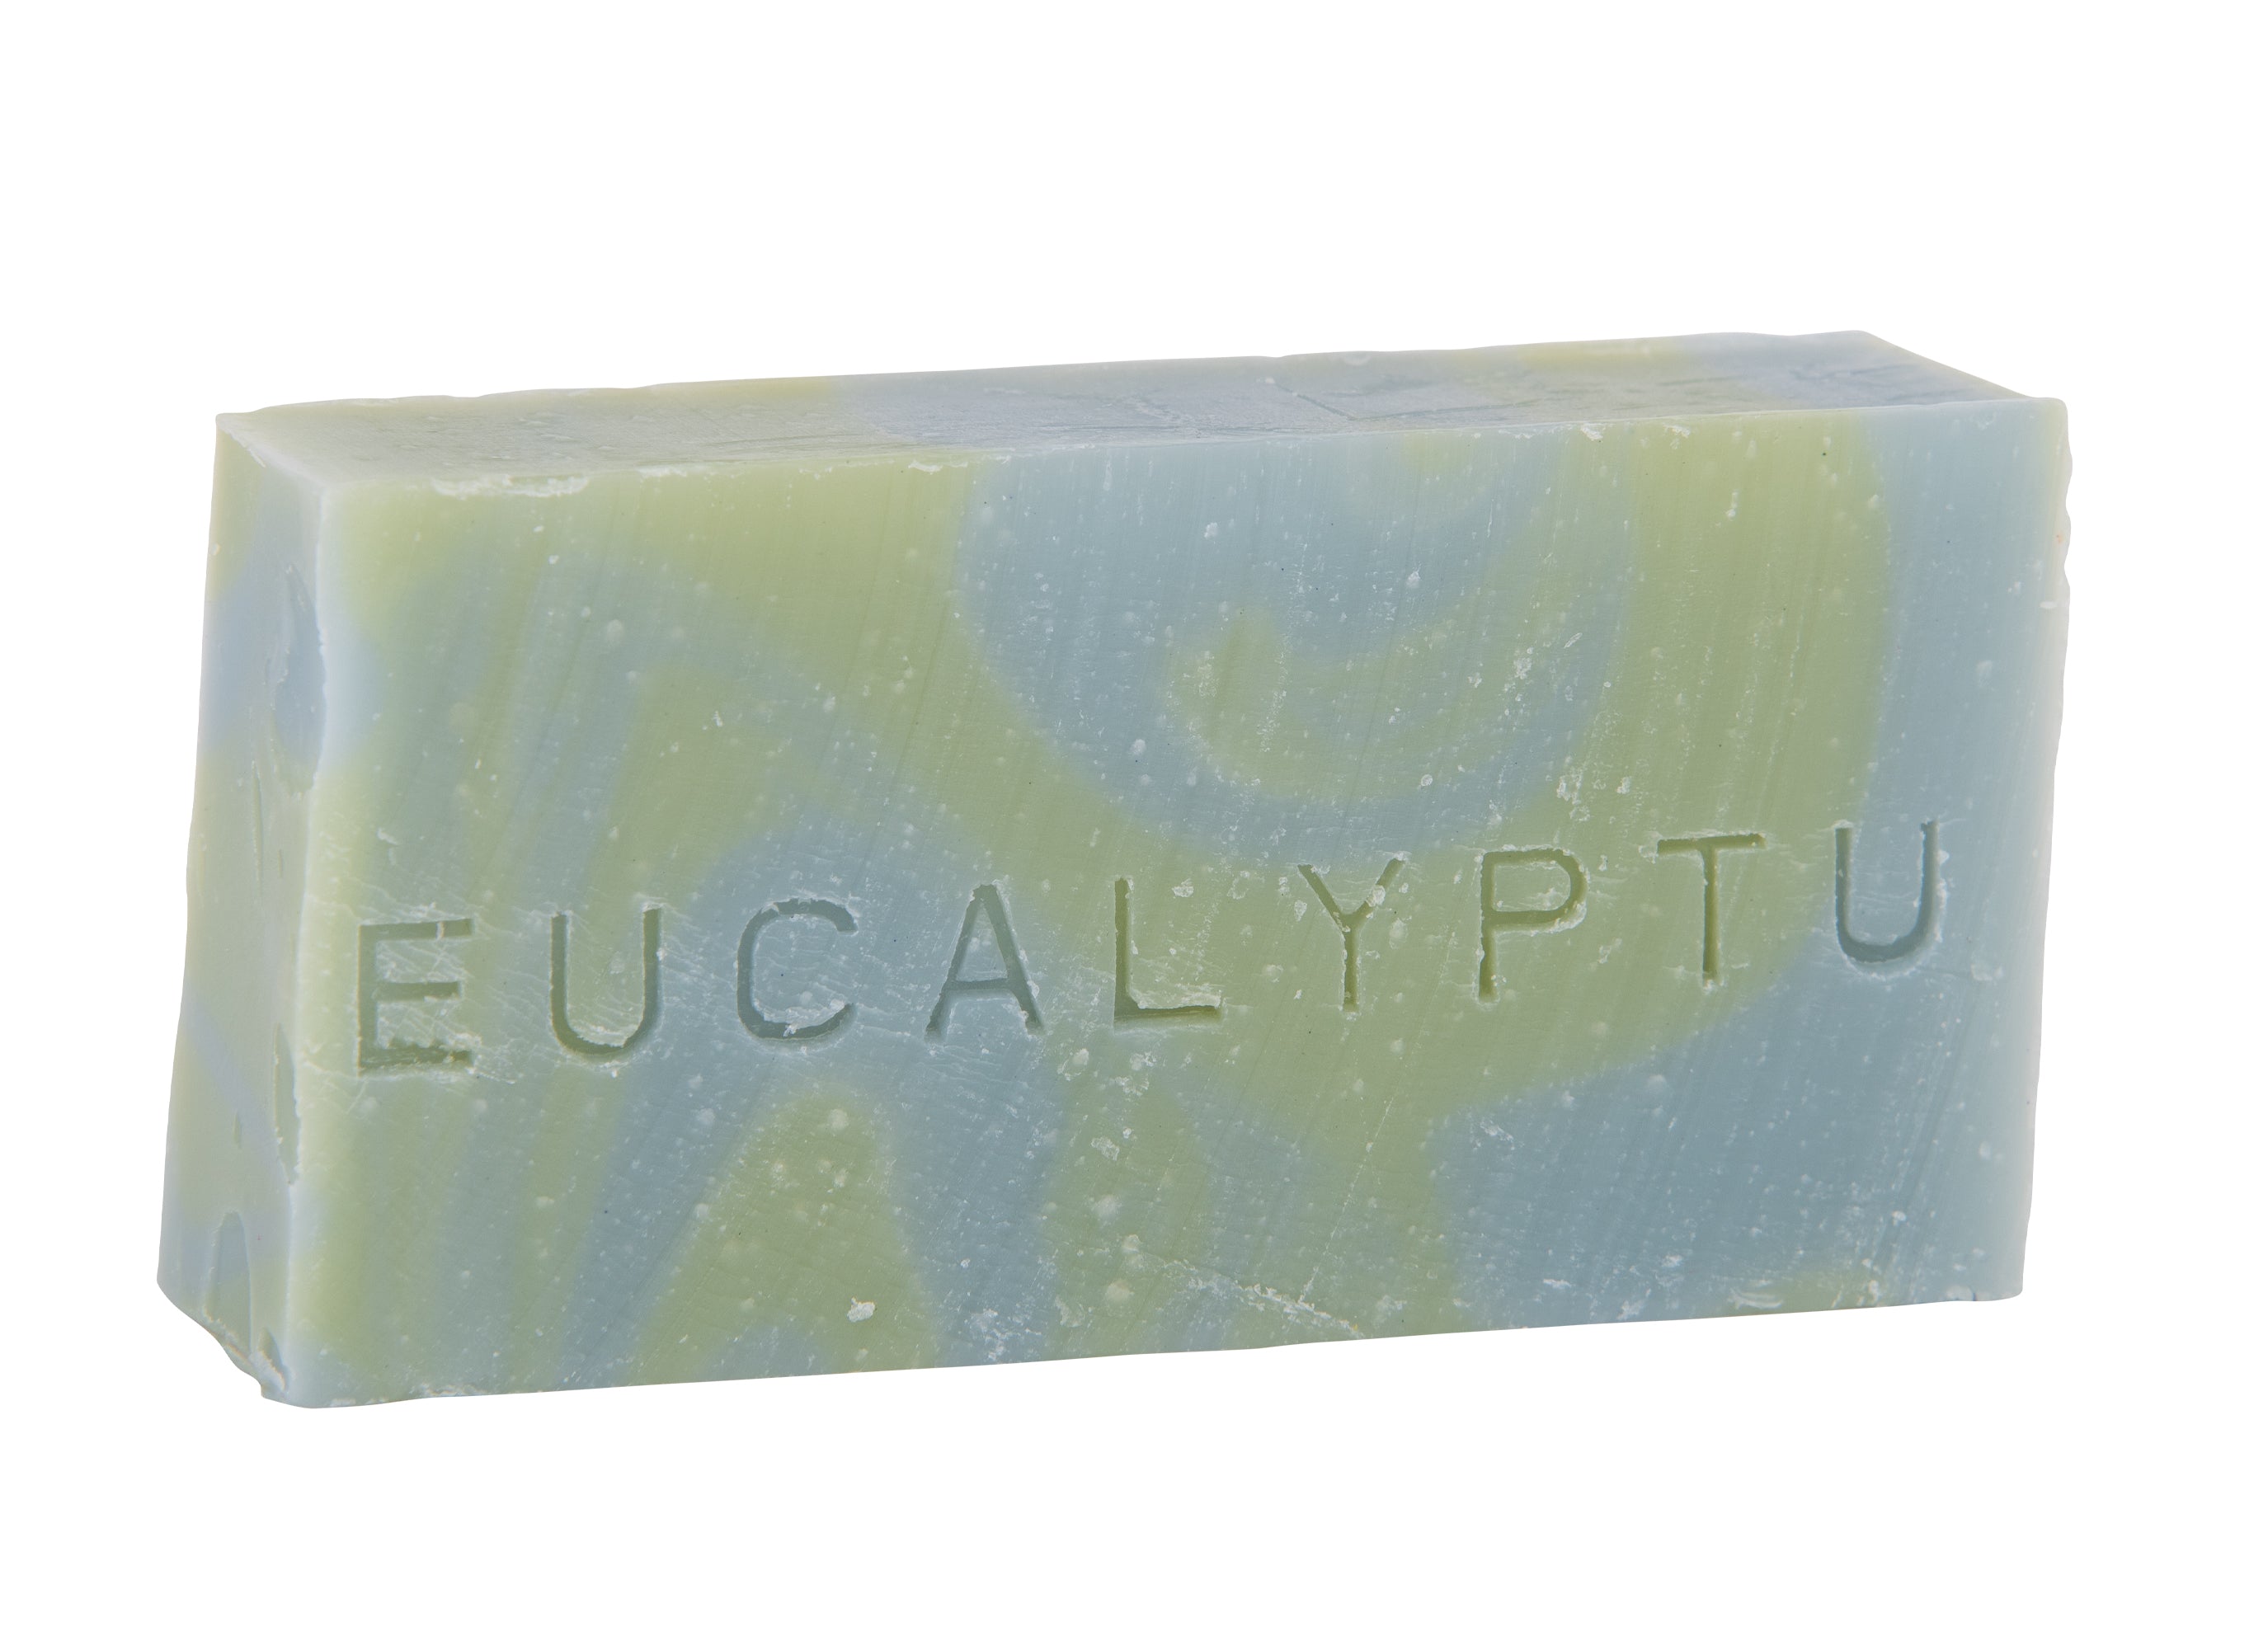 Savon corps visage 90 g. Huile essentielle eucalyptus. Bicolor marbré bleu pâle et vert pâle. Surgras à 8%.  Notre savon convient à tous les types de peau et constitue le choix idéal pour une utilisation quotidienne afin d&#39;obtenir une peau lisse et éclatante.